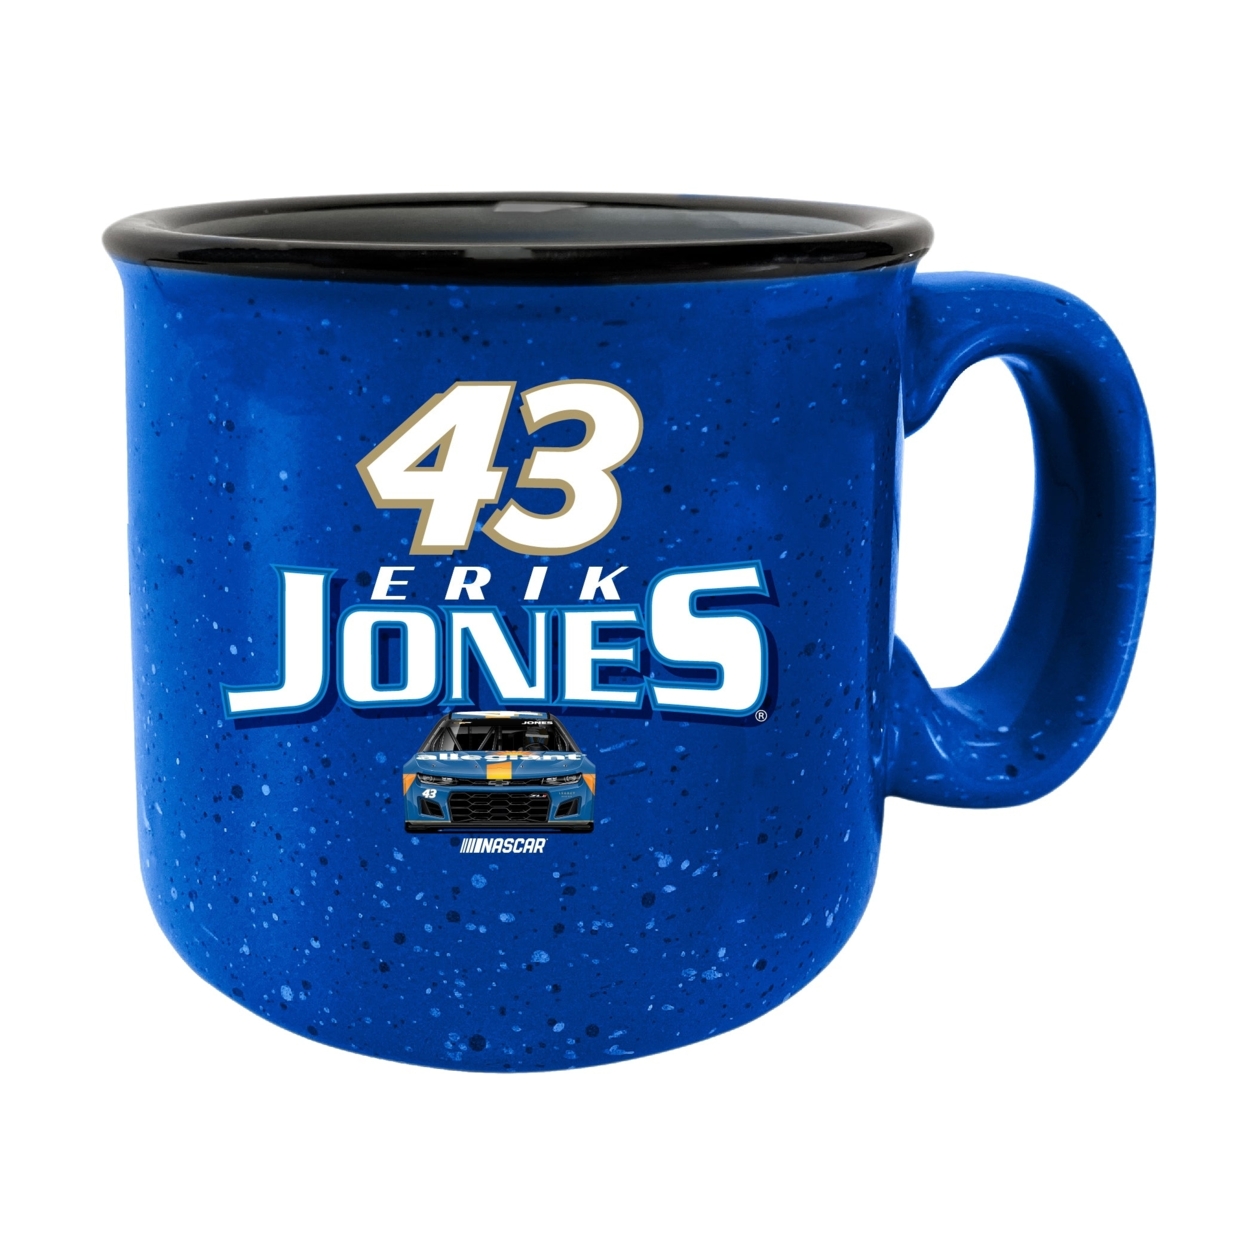 #43 Erik Jones Officially Licensed Ceramic Camper Mug 16oz - Grey